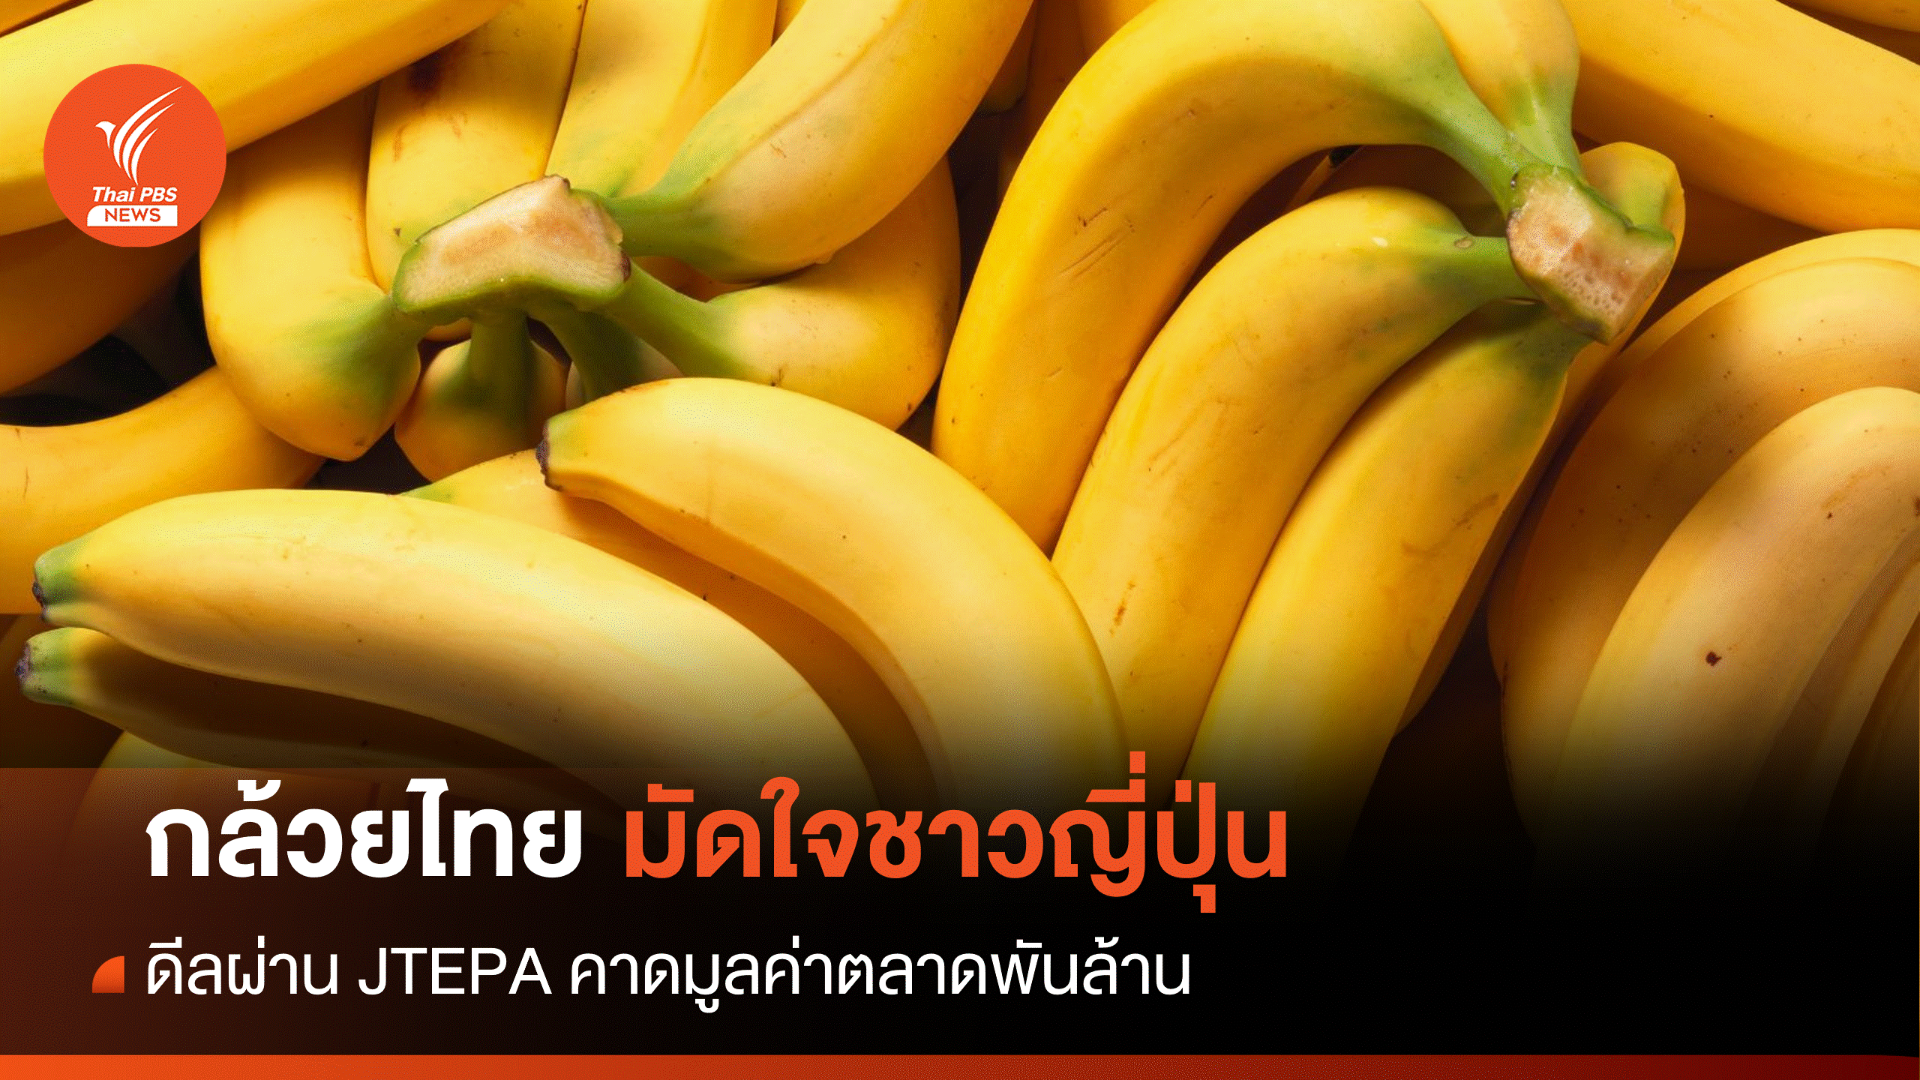 กล้วยไทยมัดใจ "ชาวญี่ปุ่น" สร้างมูลค่า 1,000 ล้าน